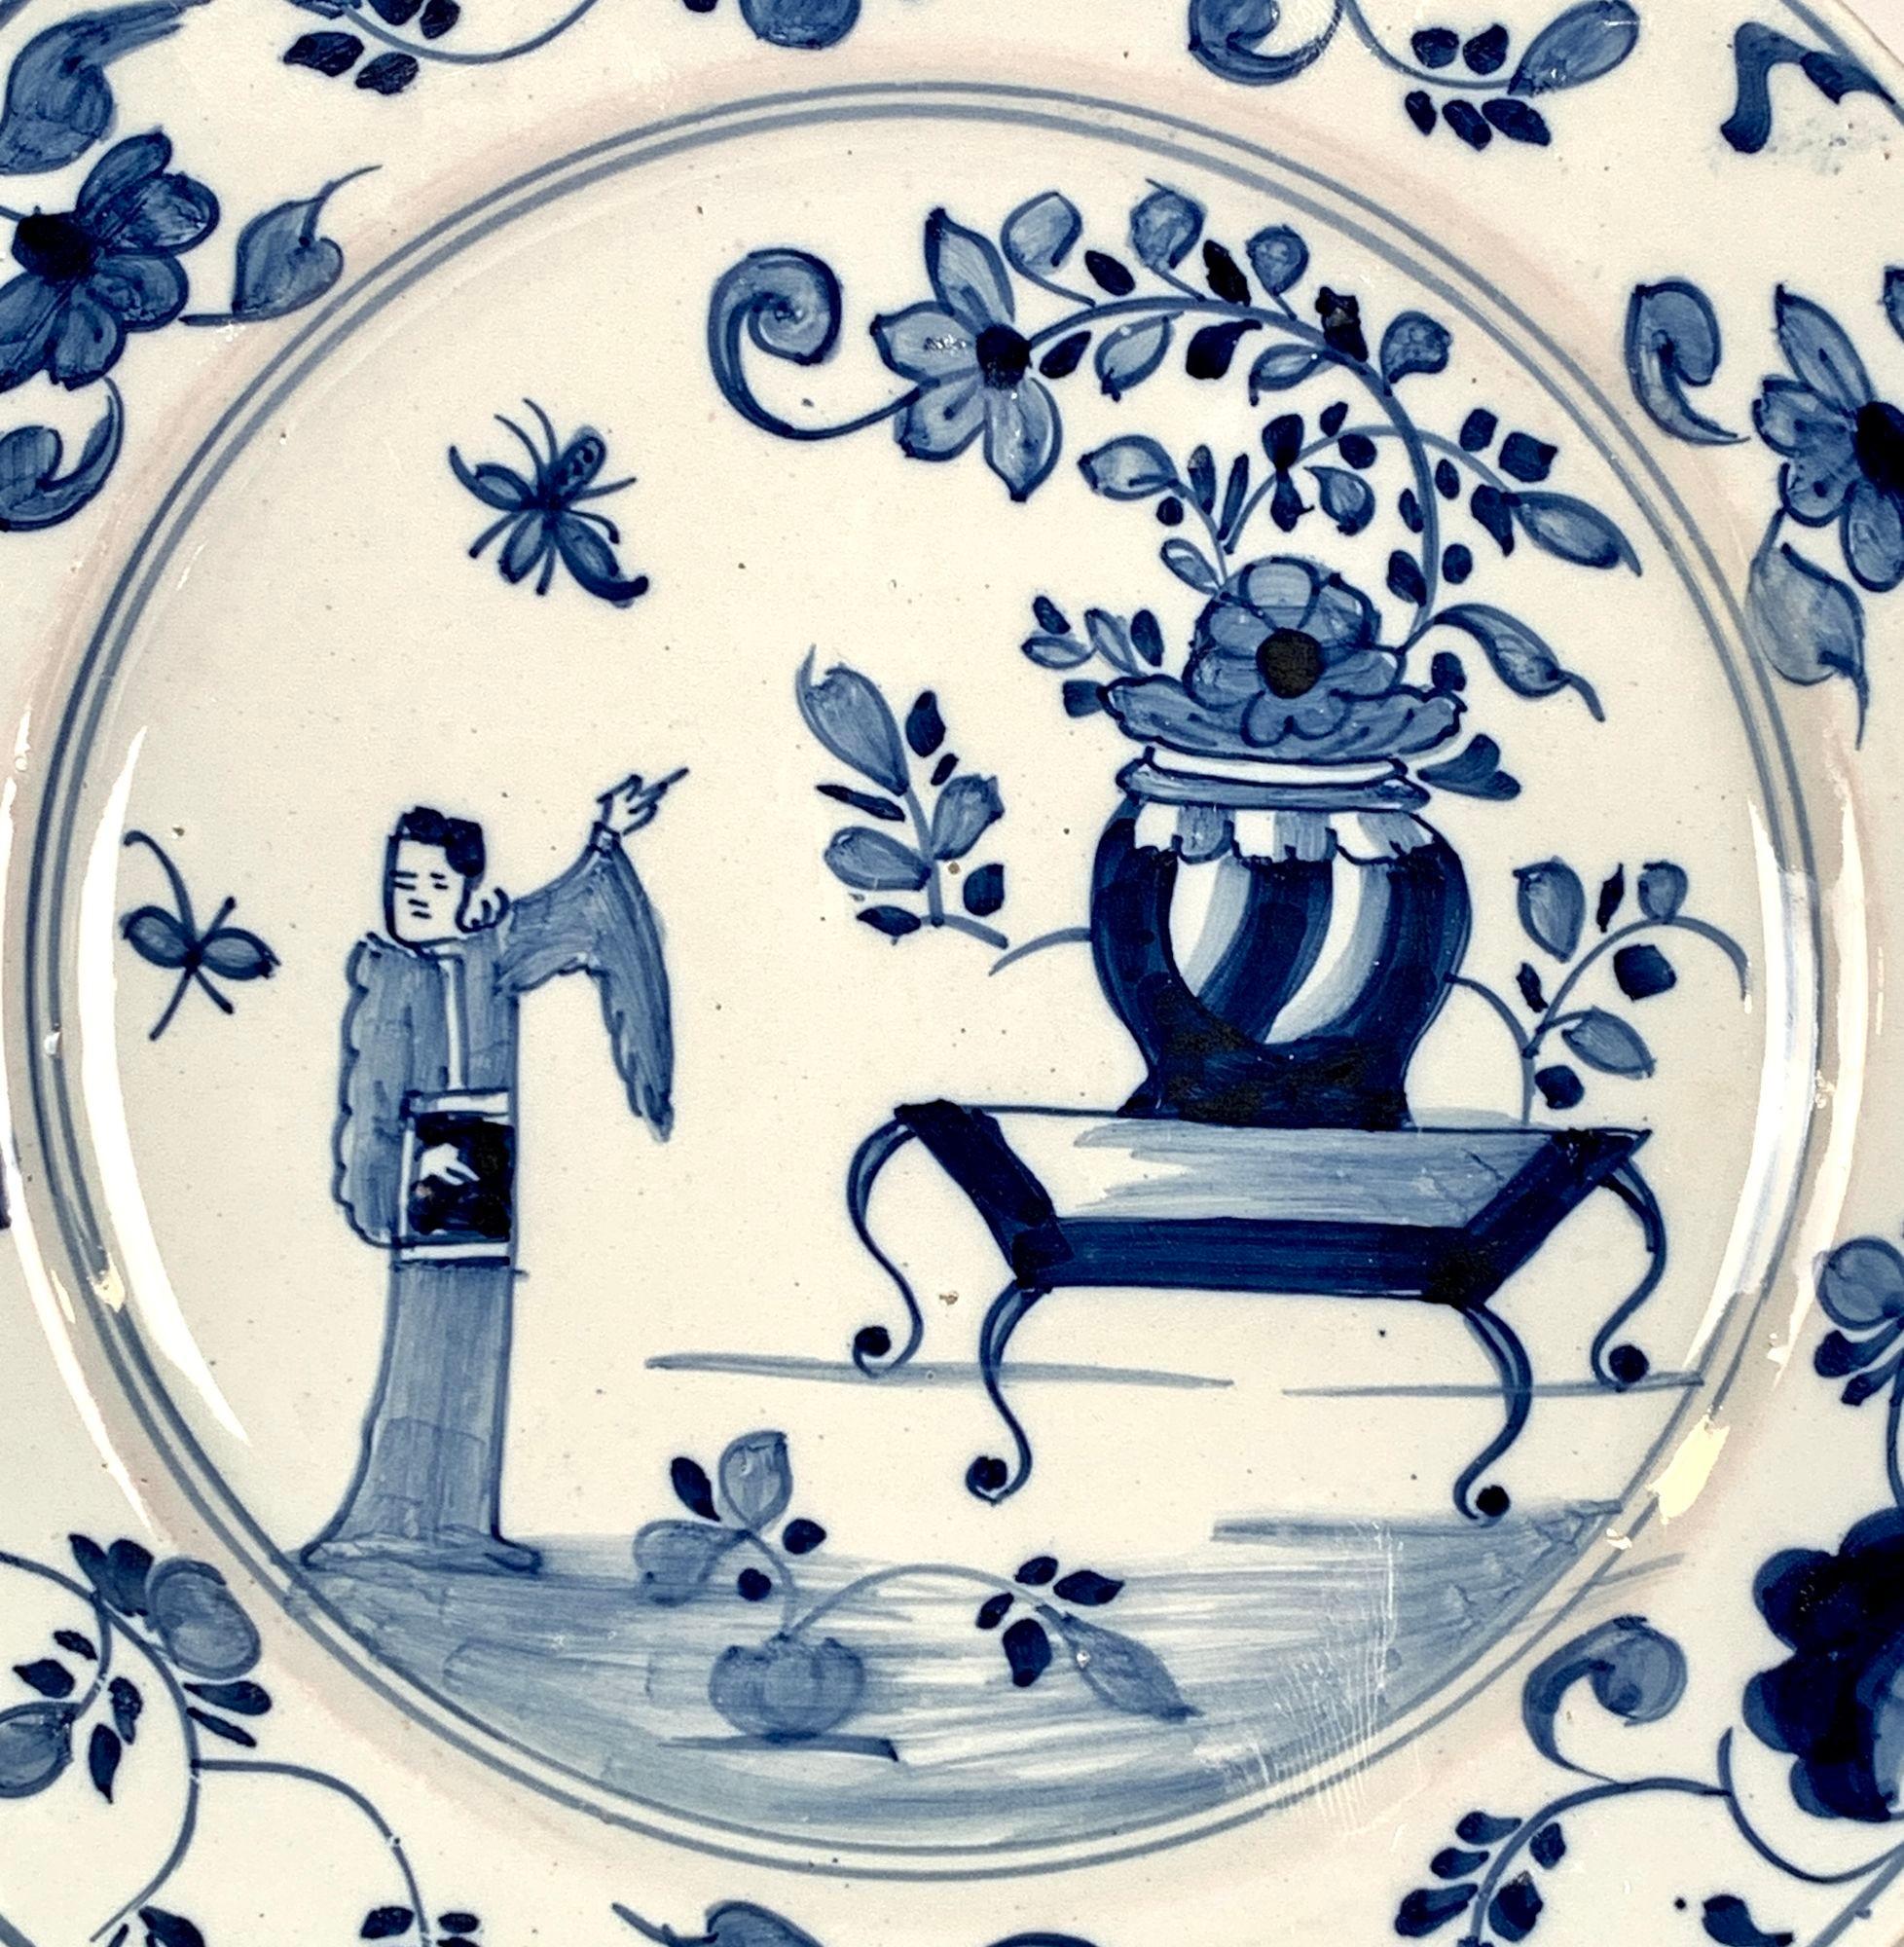 Diese herrliche blau-weiße Delft-Schale wurde um 1760 in England handbemalt.
Es zeigt eine charmante Chinoiserie-Szene, in der eine orientalische Figur auf eine Vase zeigt, während zwei Schmetterlinge in der Nähe flattern.
Es scheint, als wolle sie